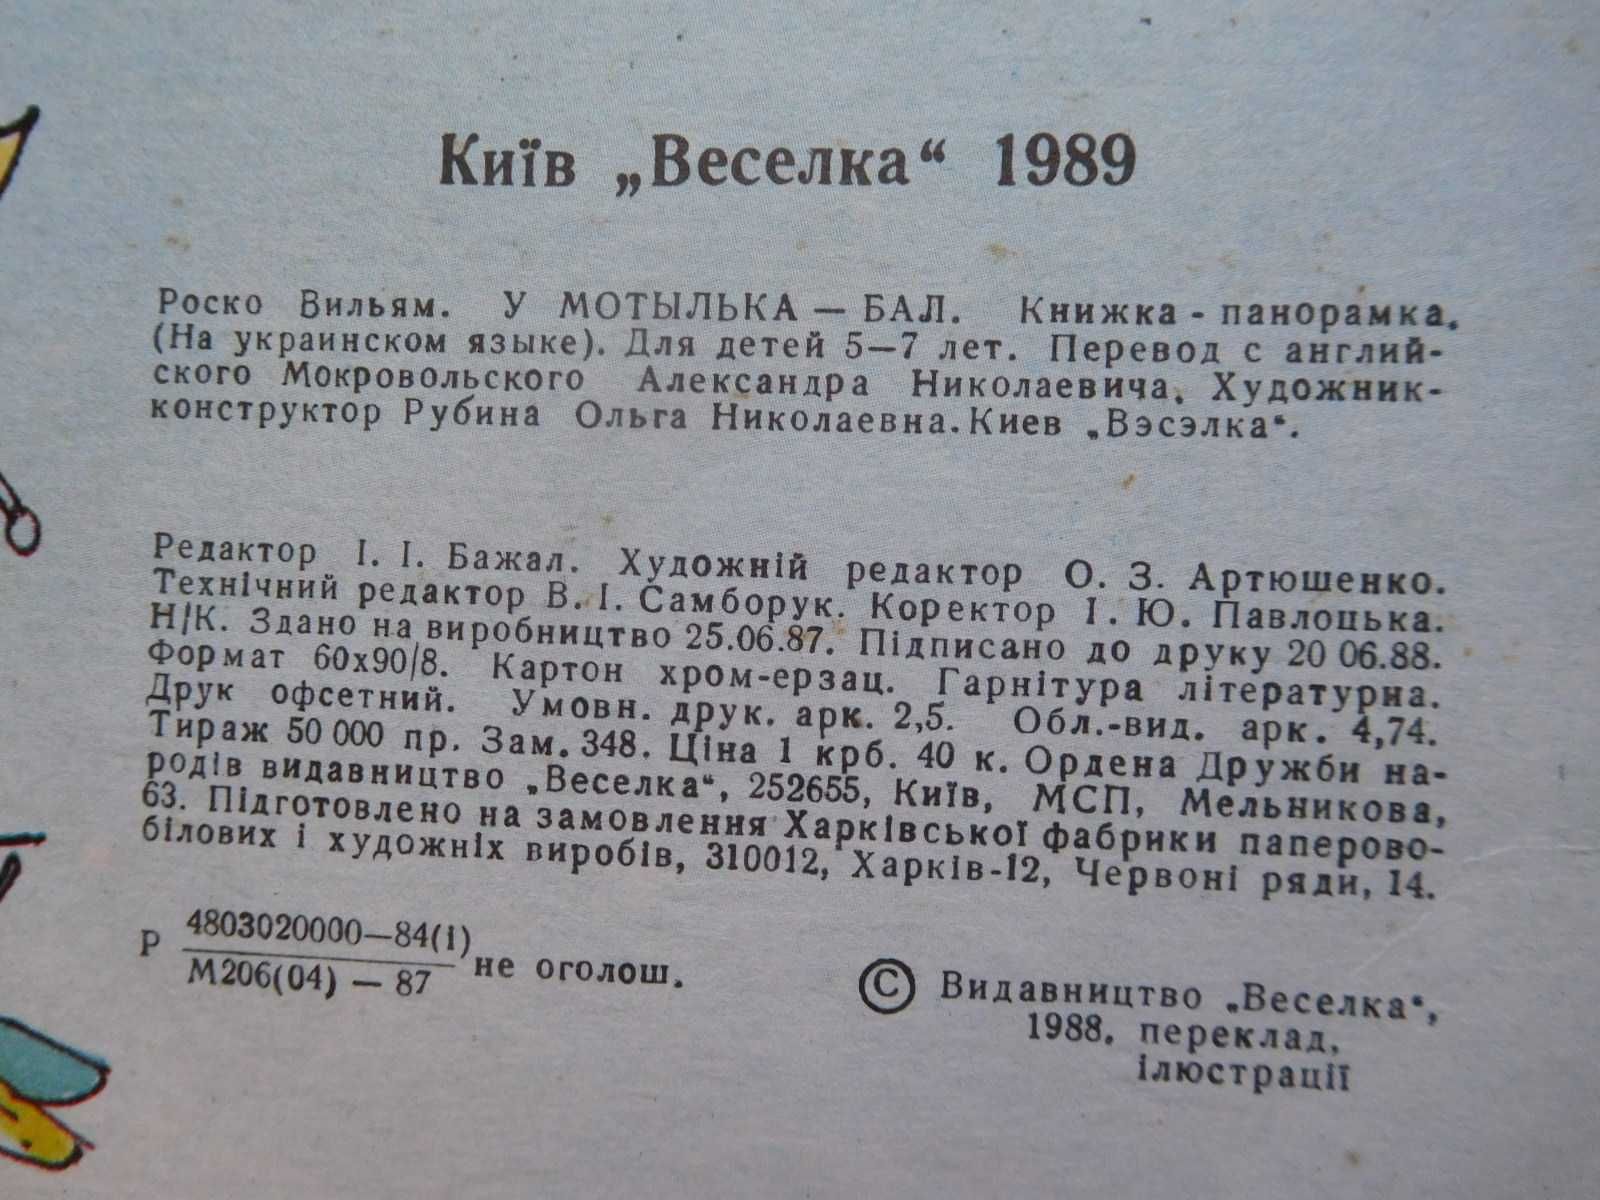 Вільям Роско У метелика бал Веселка 1989